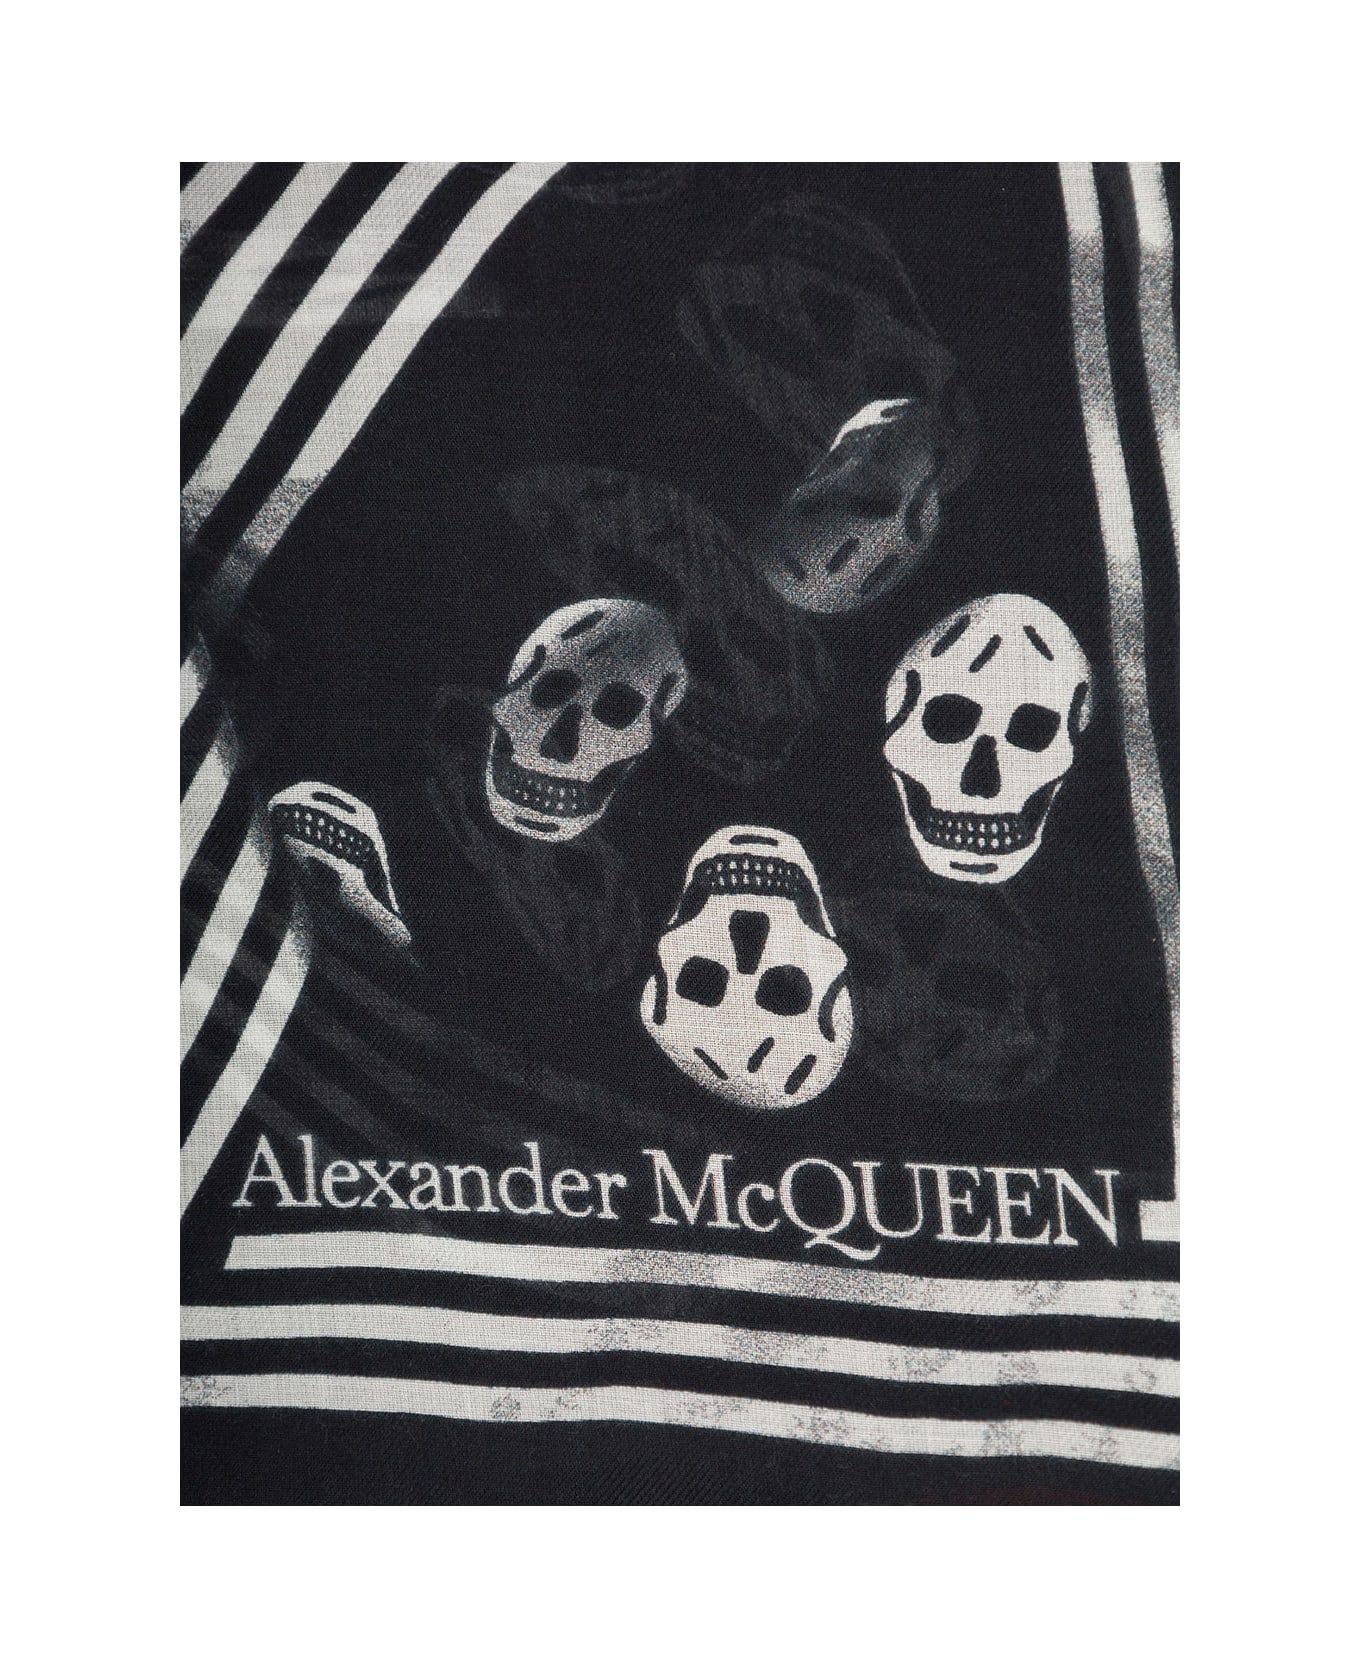 Alexander McQueen Man's Biker Skull Modal Scarf - Black